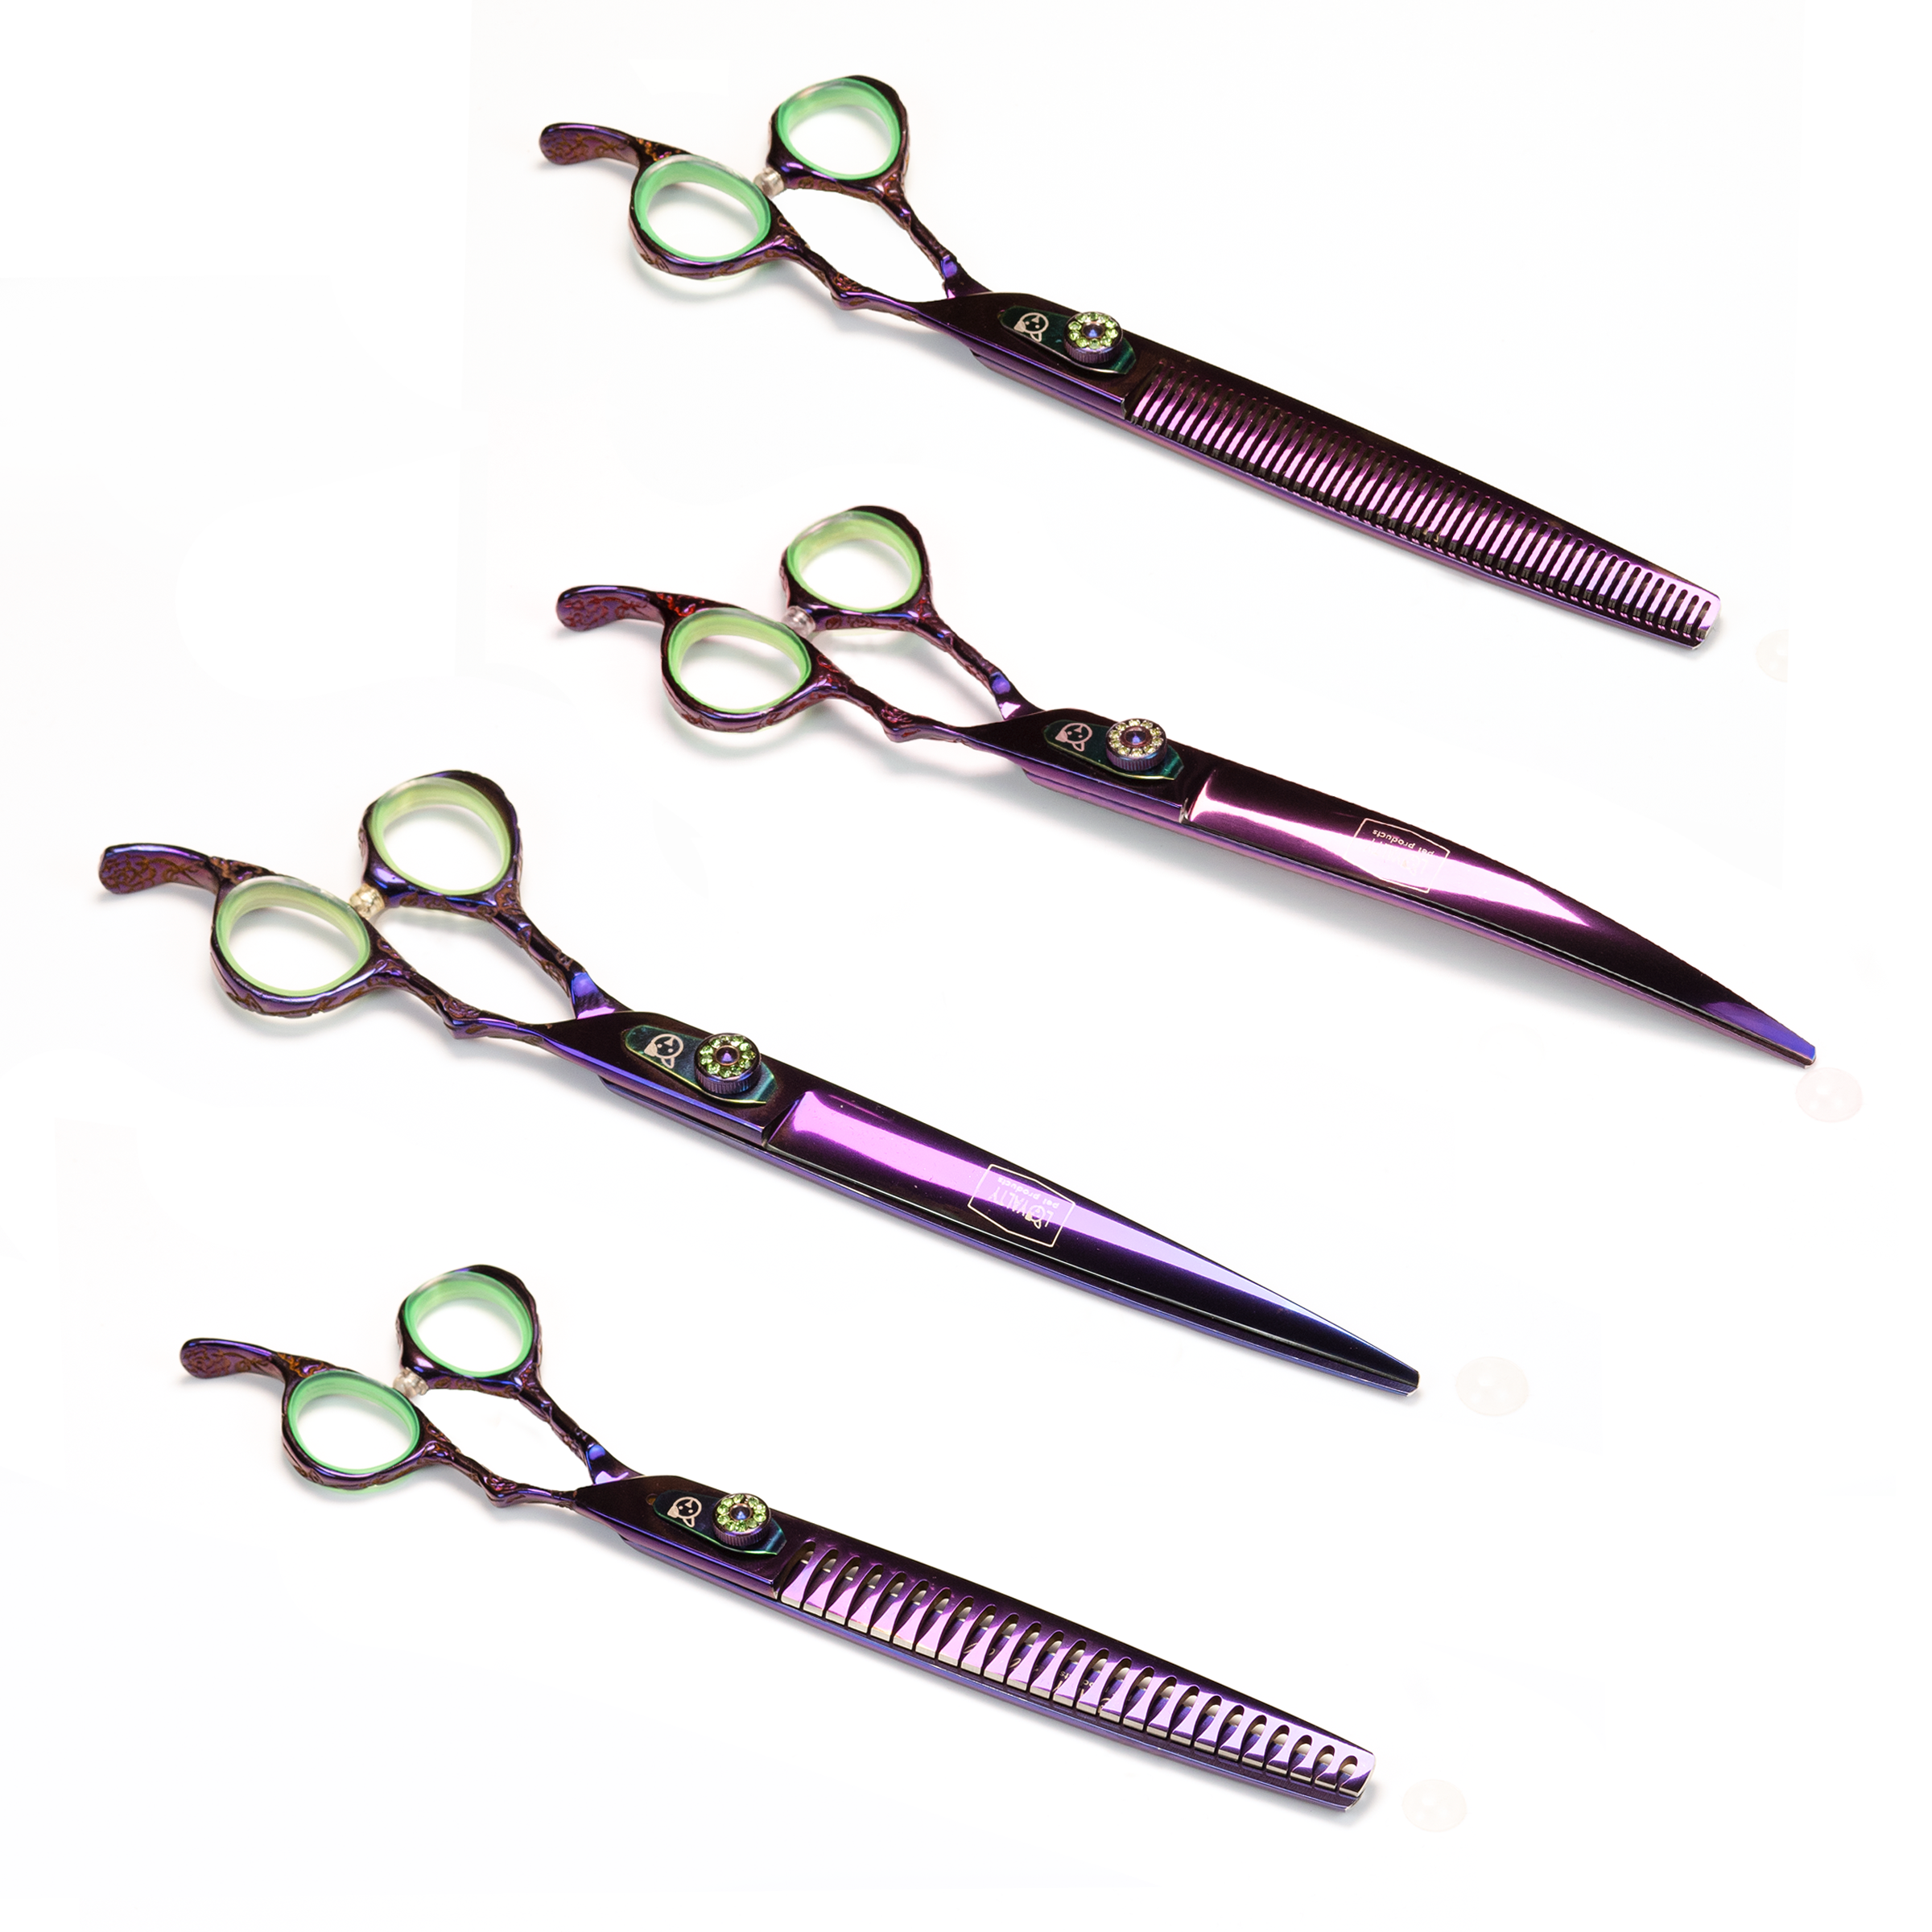 Titanium Purple Scissors Set of 4 